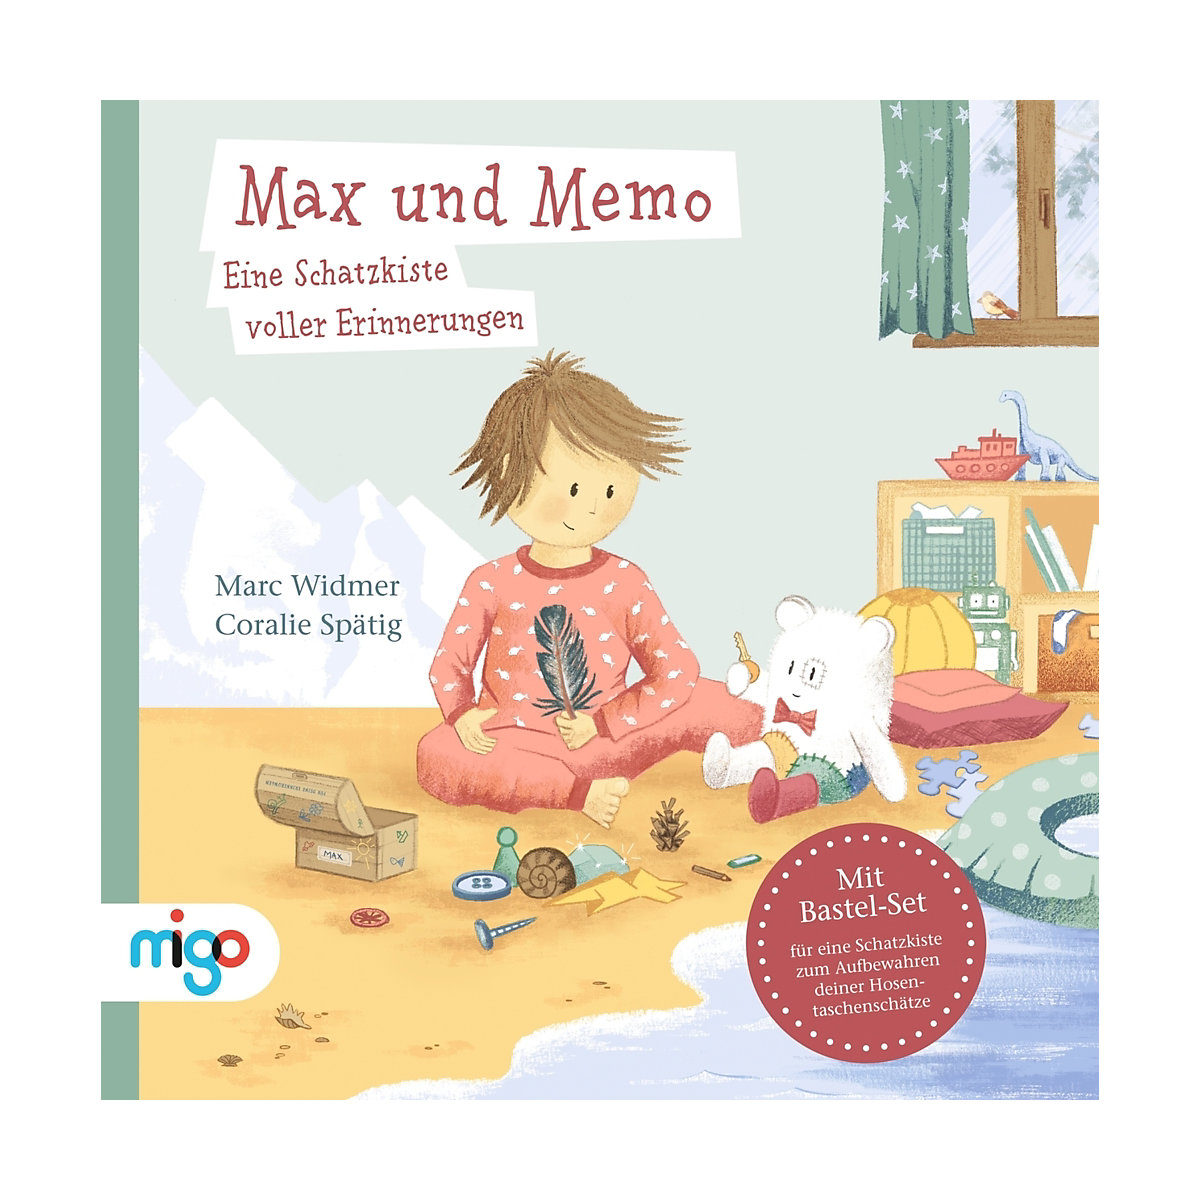 Max und Memo. Eine Schatzkiste voller Erinnerungen